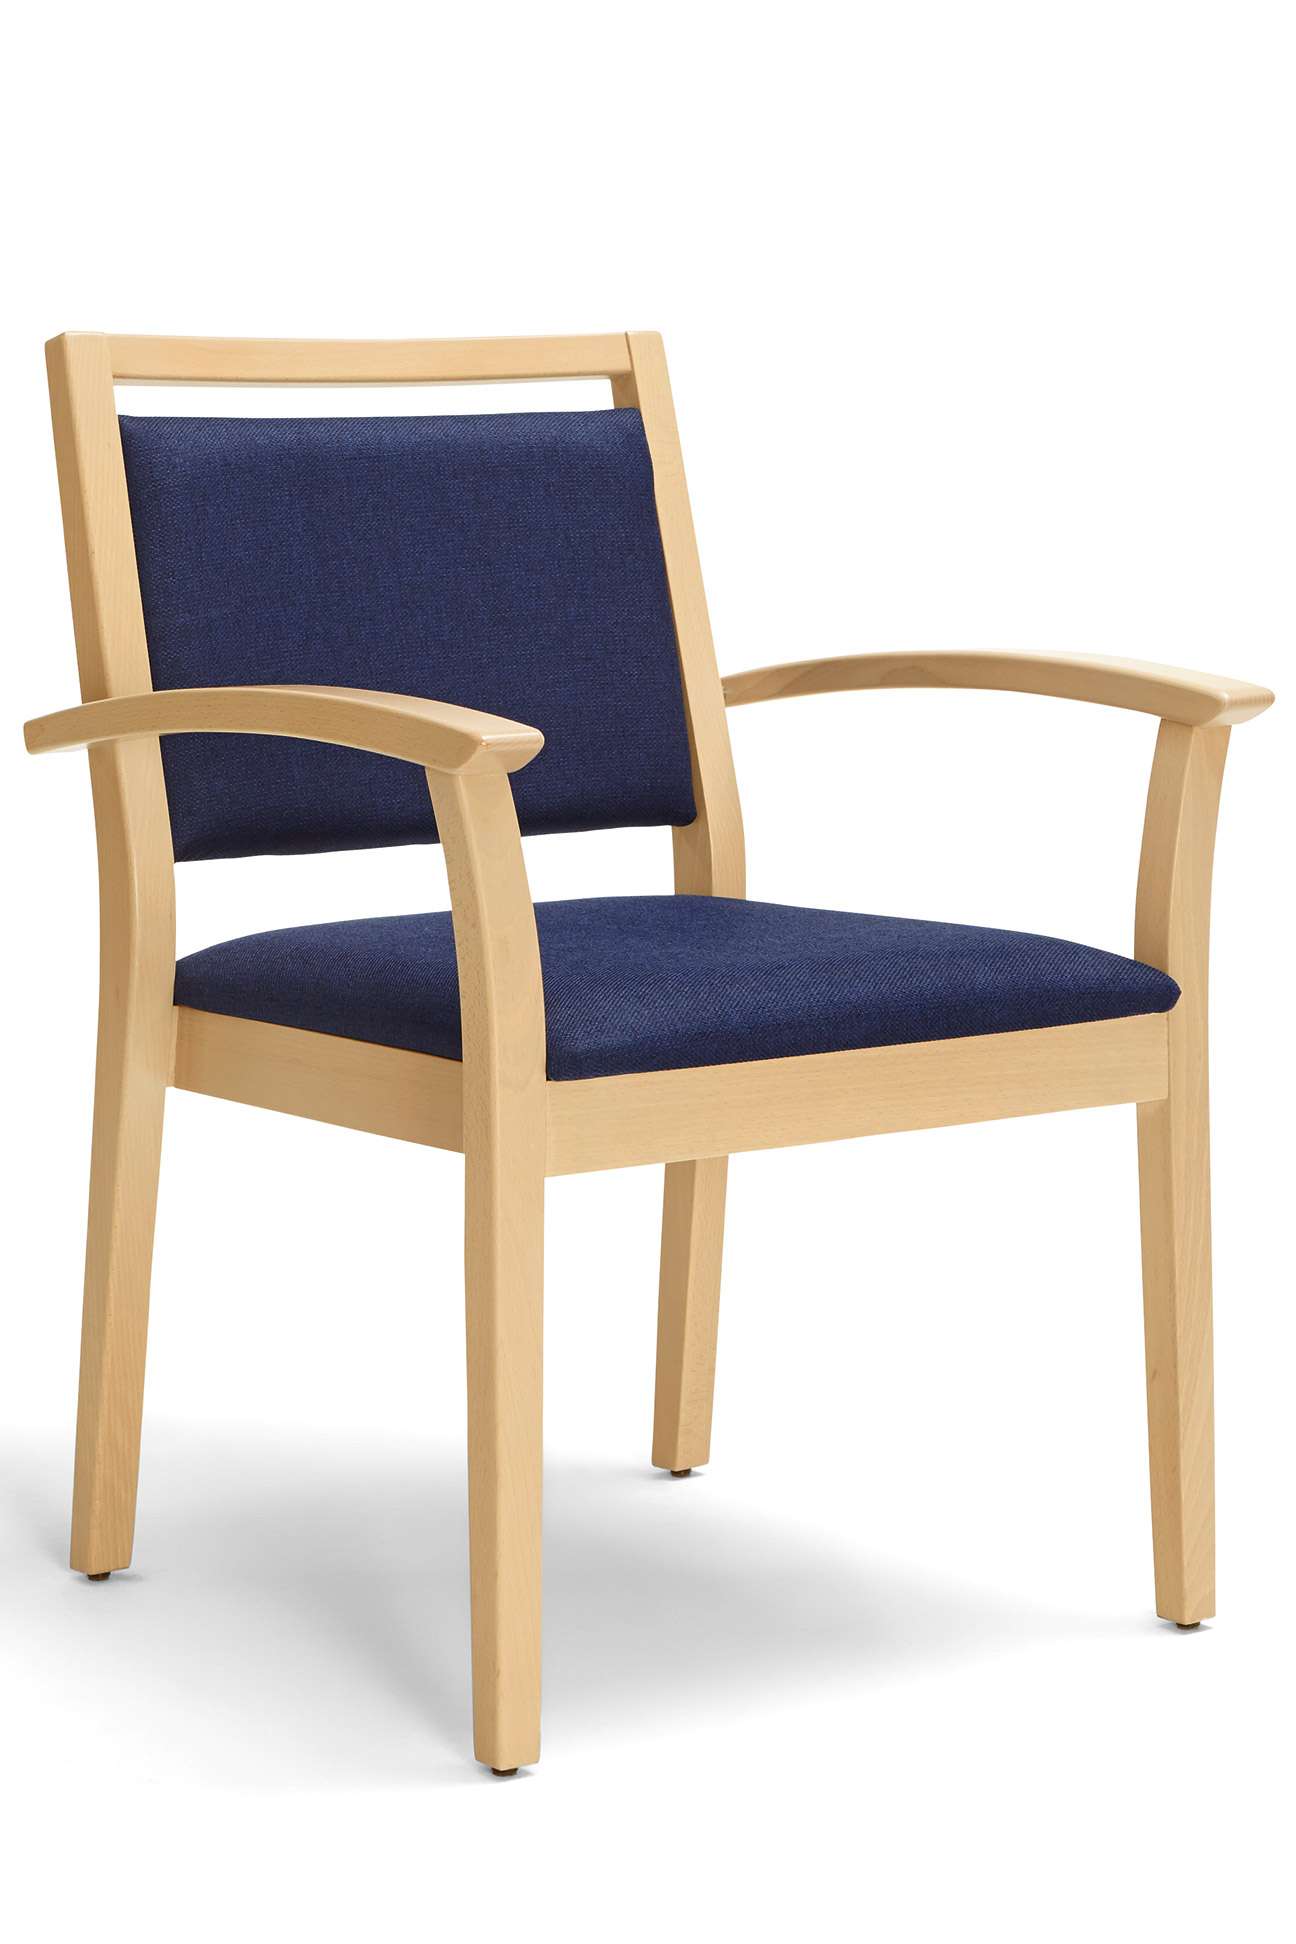 Modèle Mavo version chaise pour charges lourdes